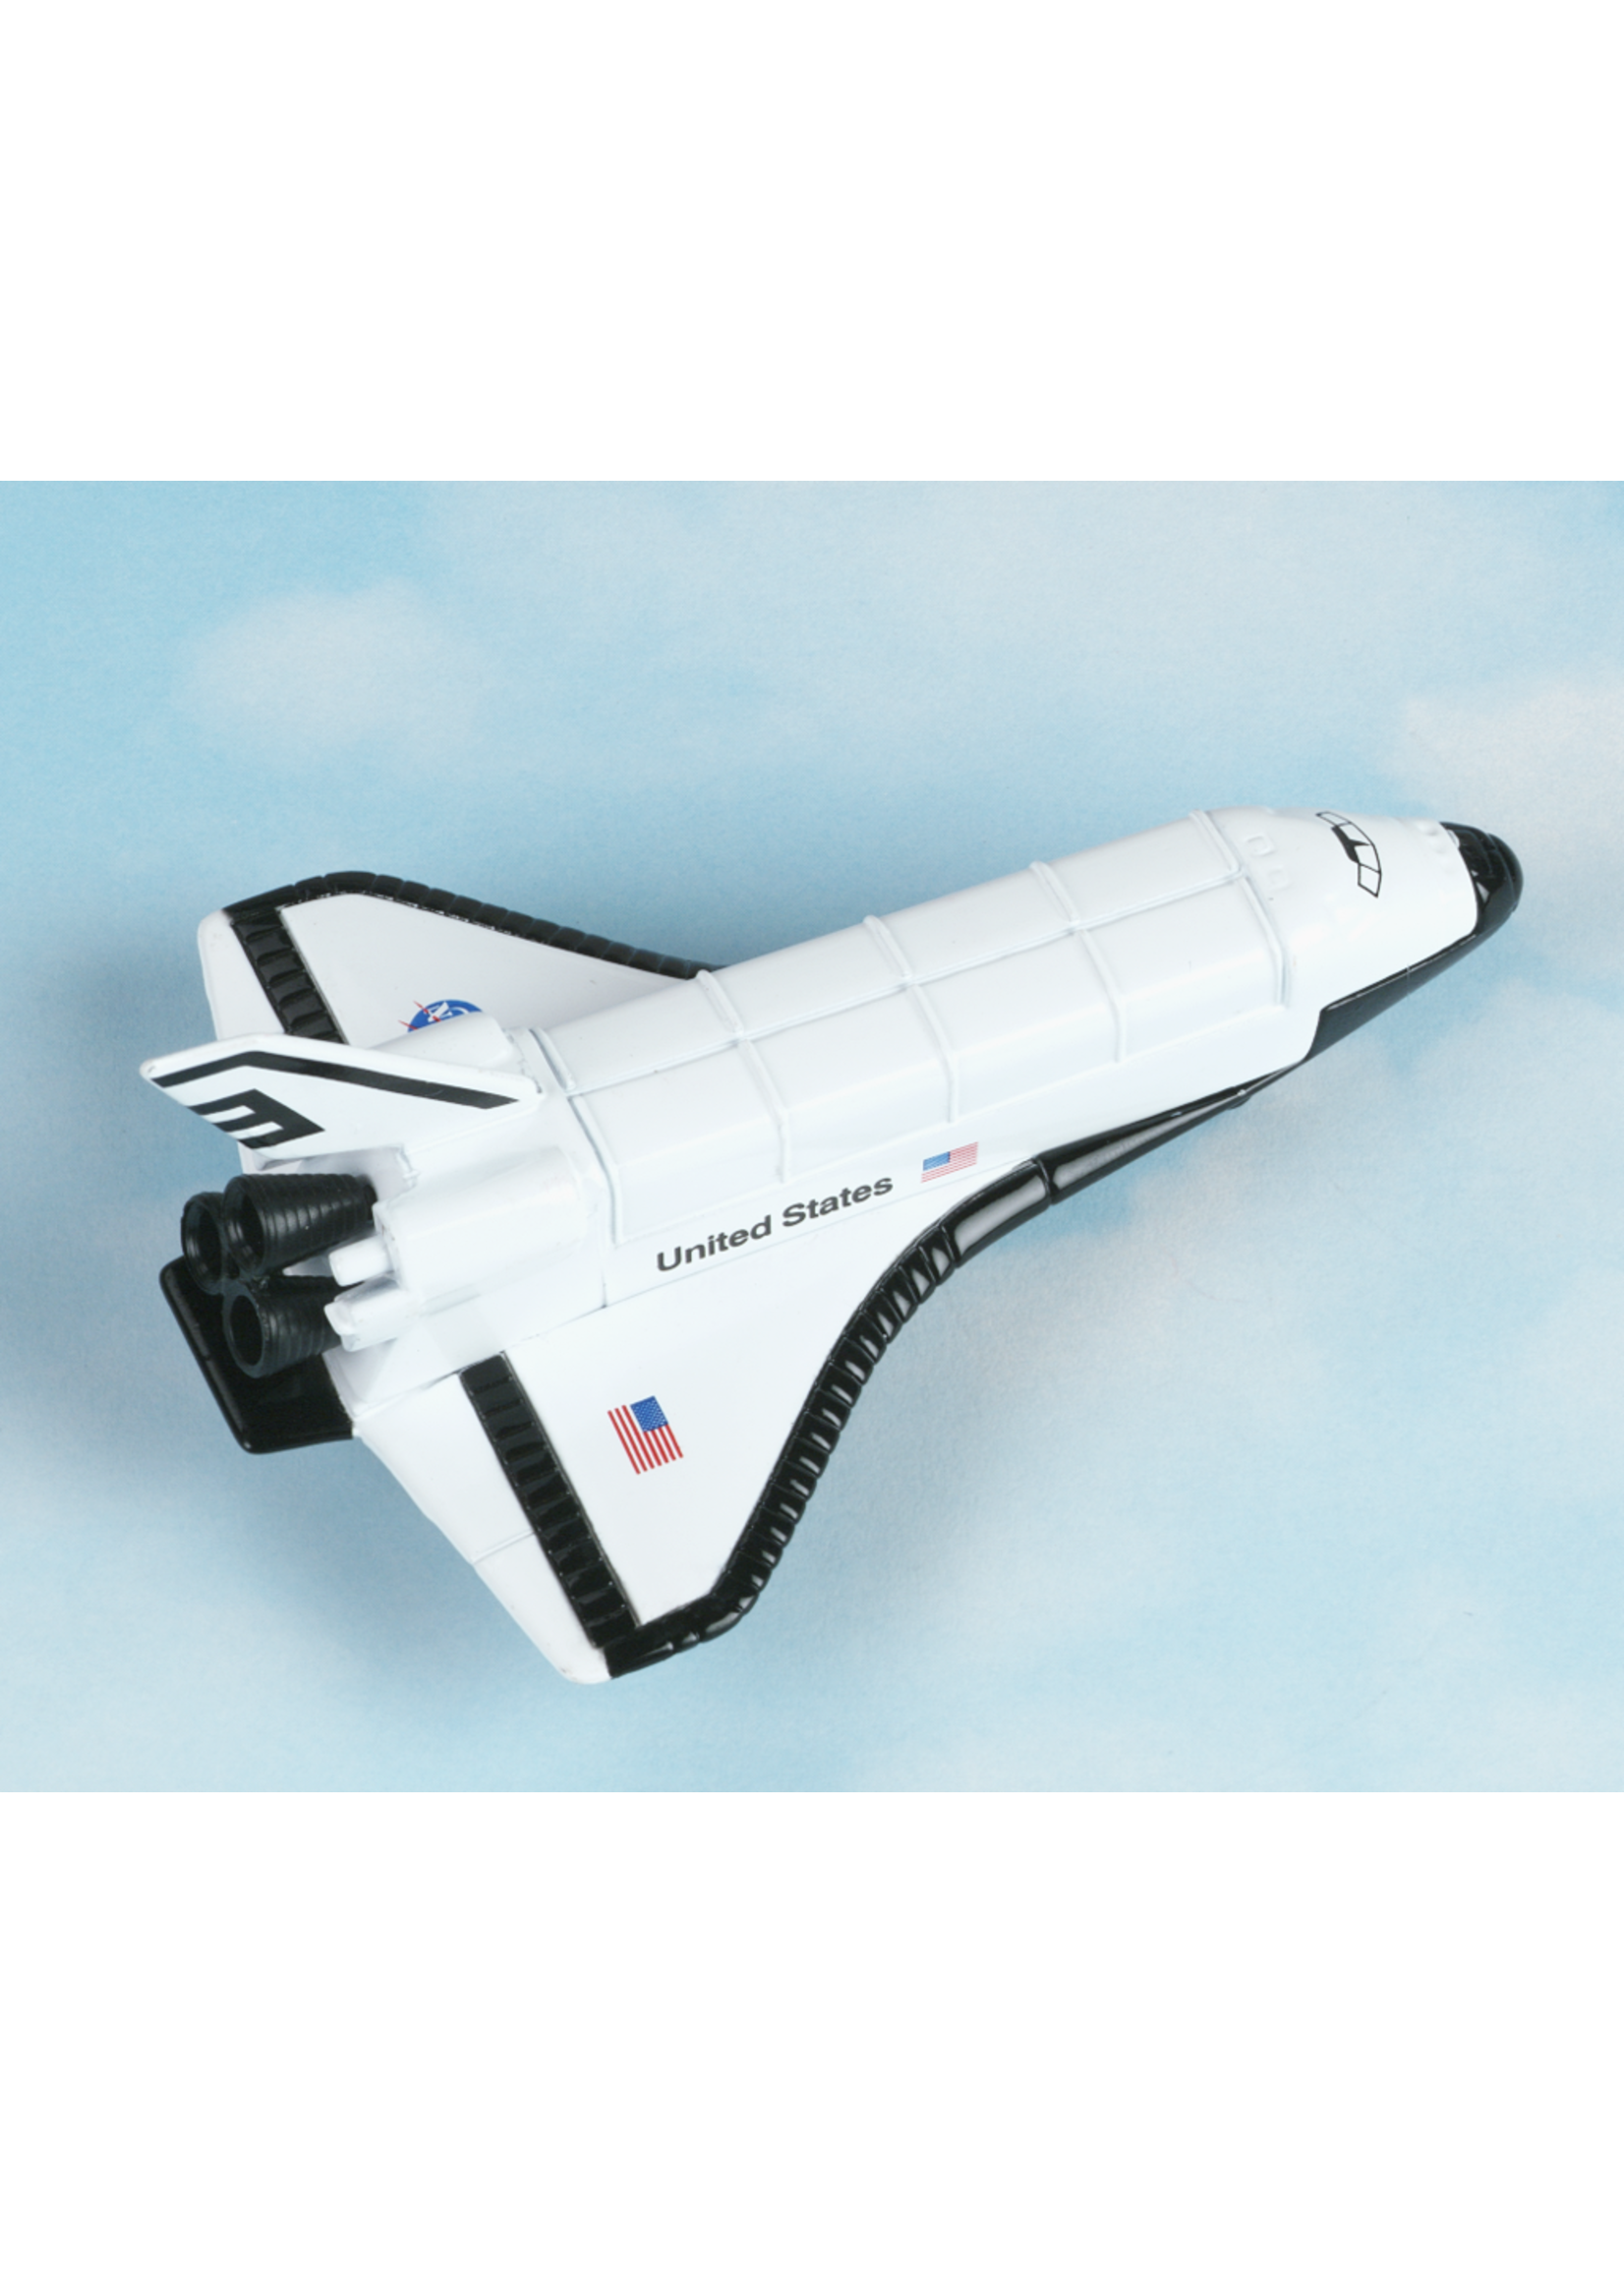 Hot Wings Space Shuttle 12105